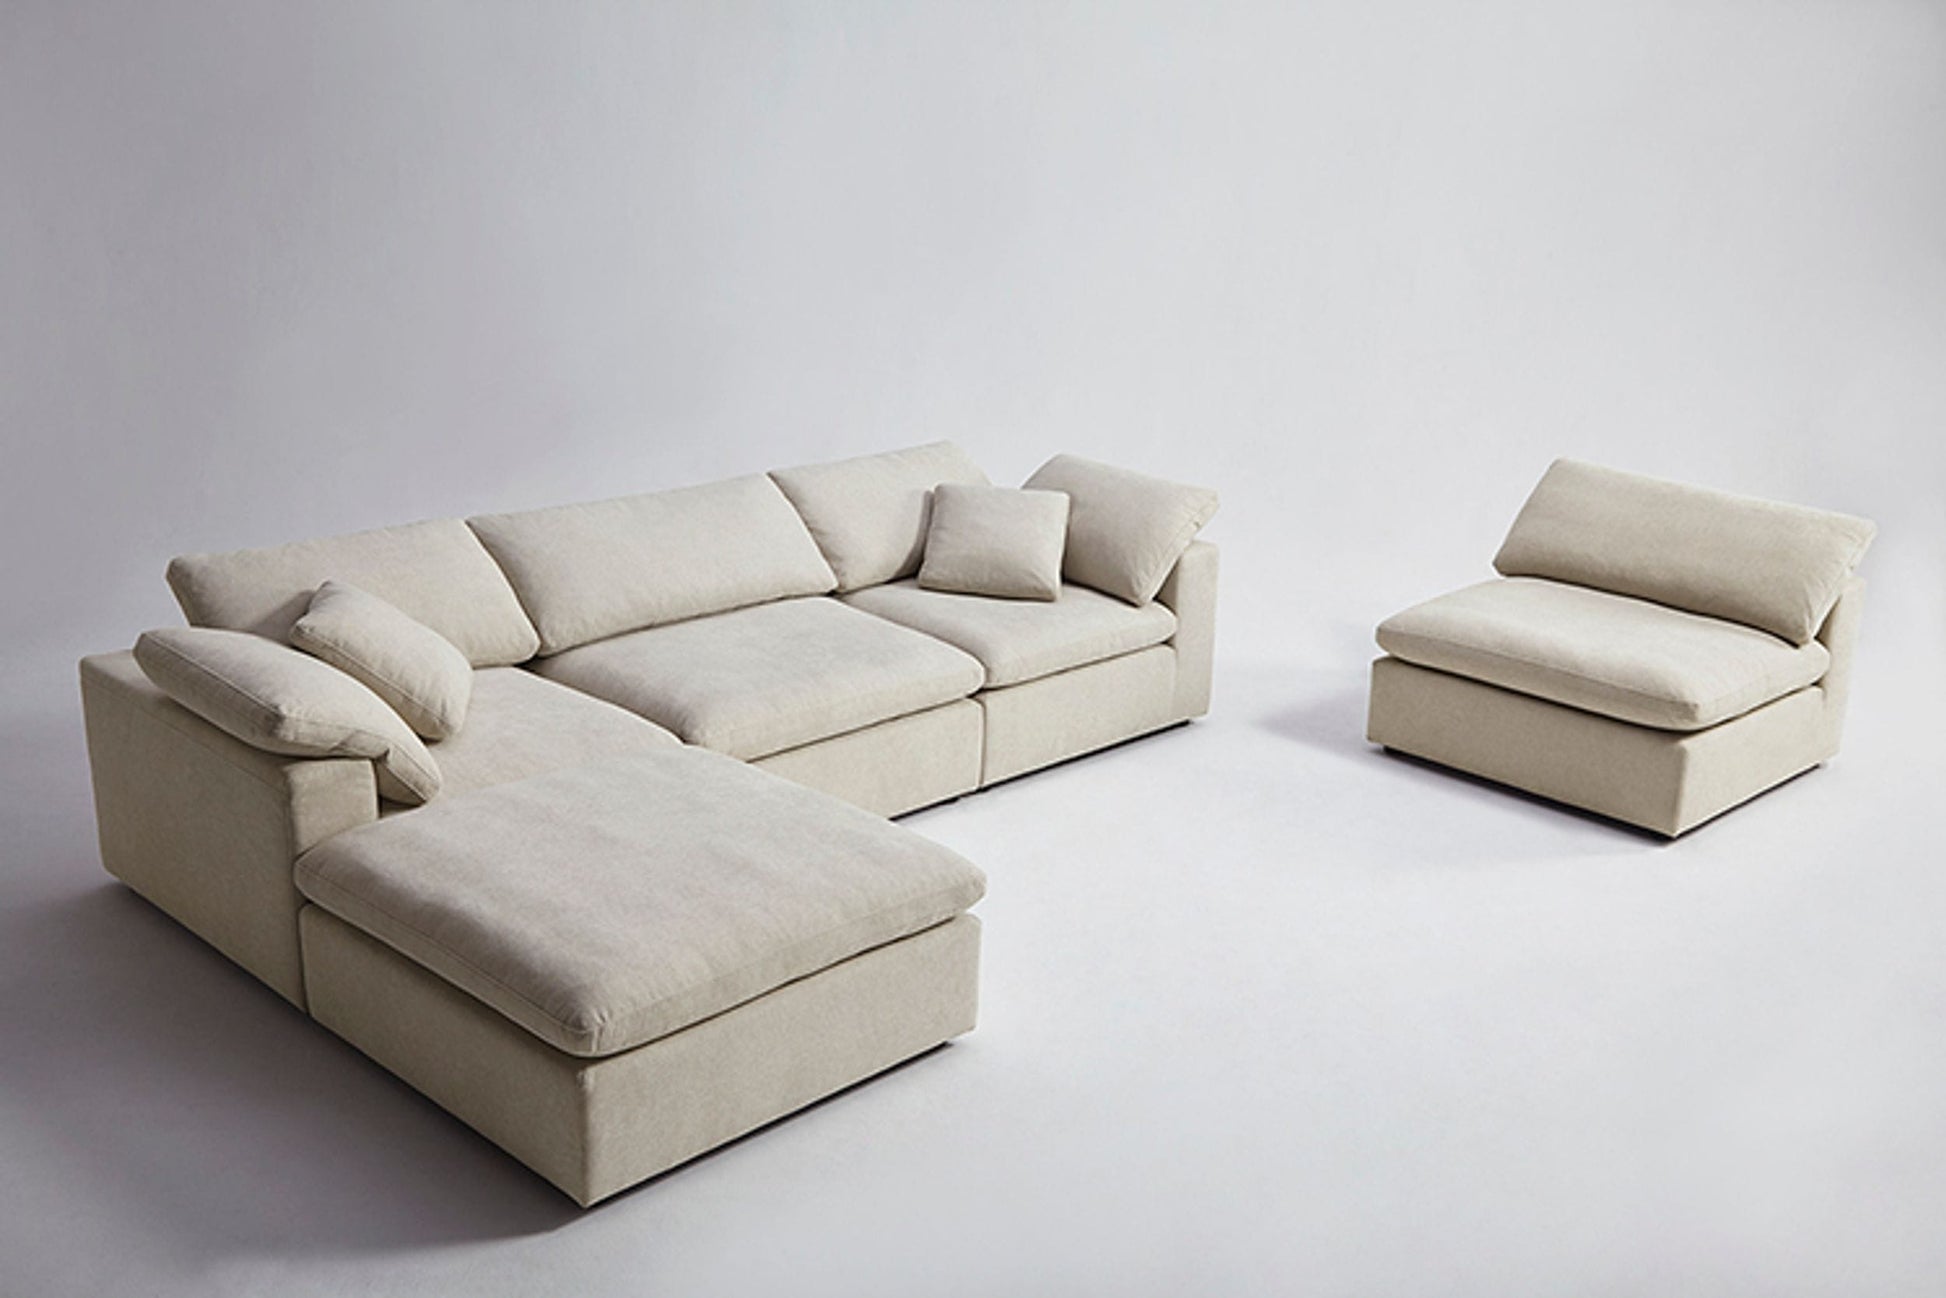 Divani Casa Kramer - Modern Modular Cream Fabric Sectional Sofa-3